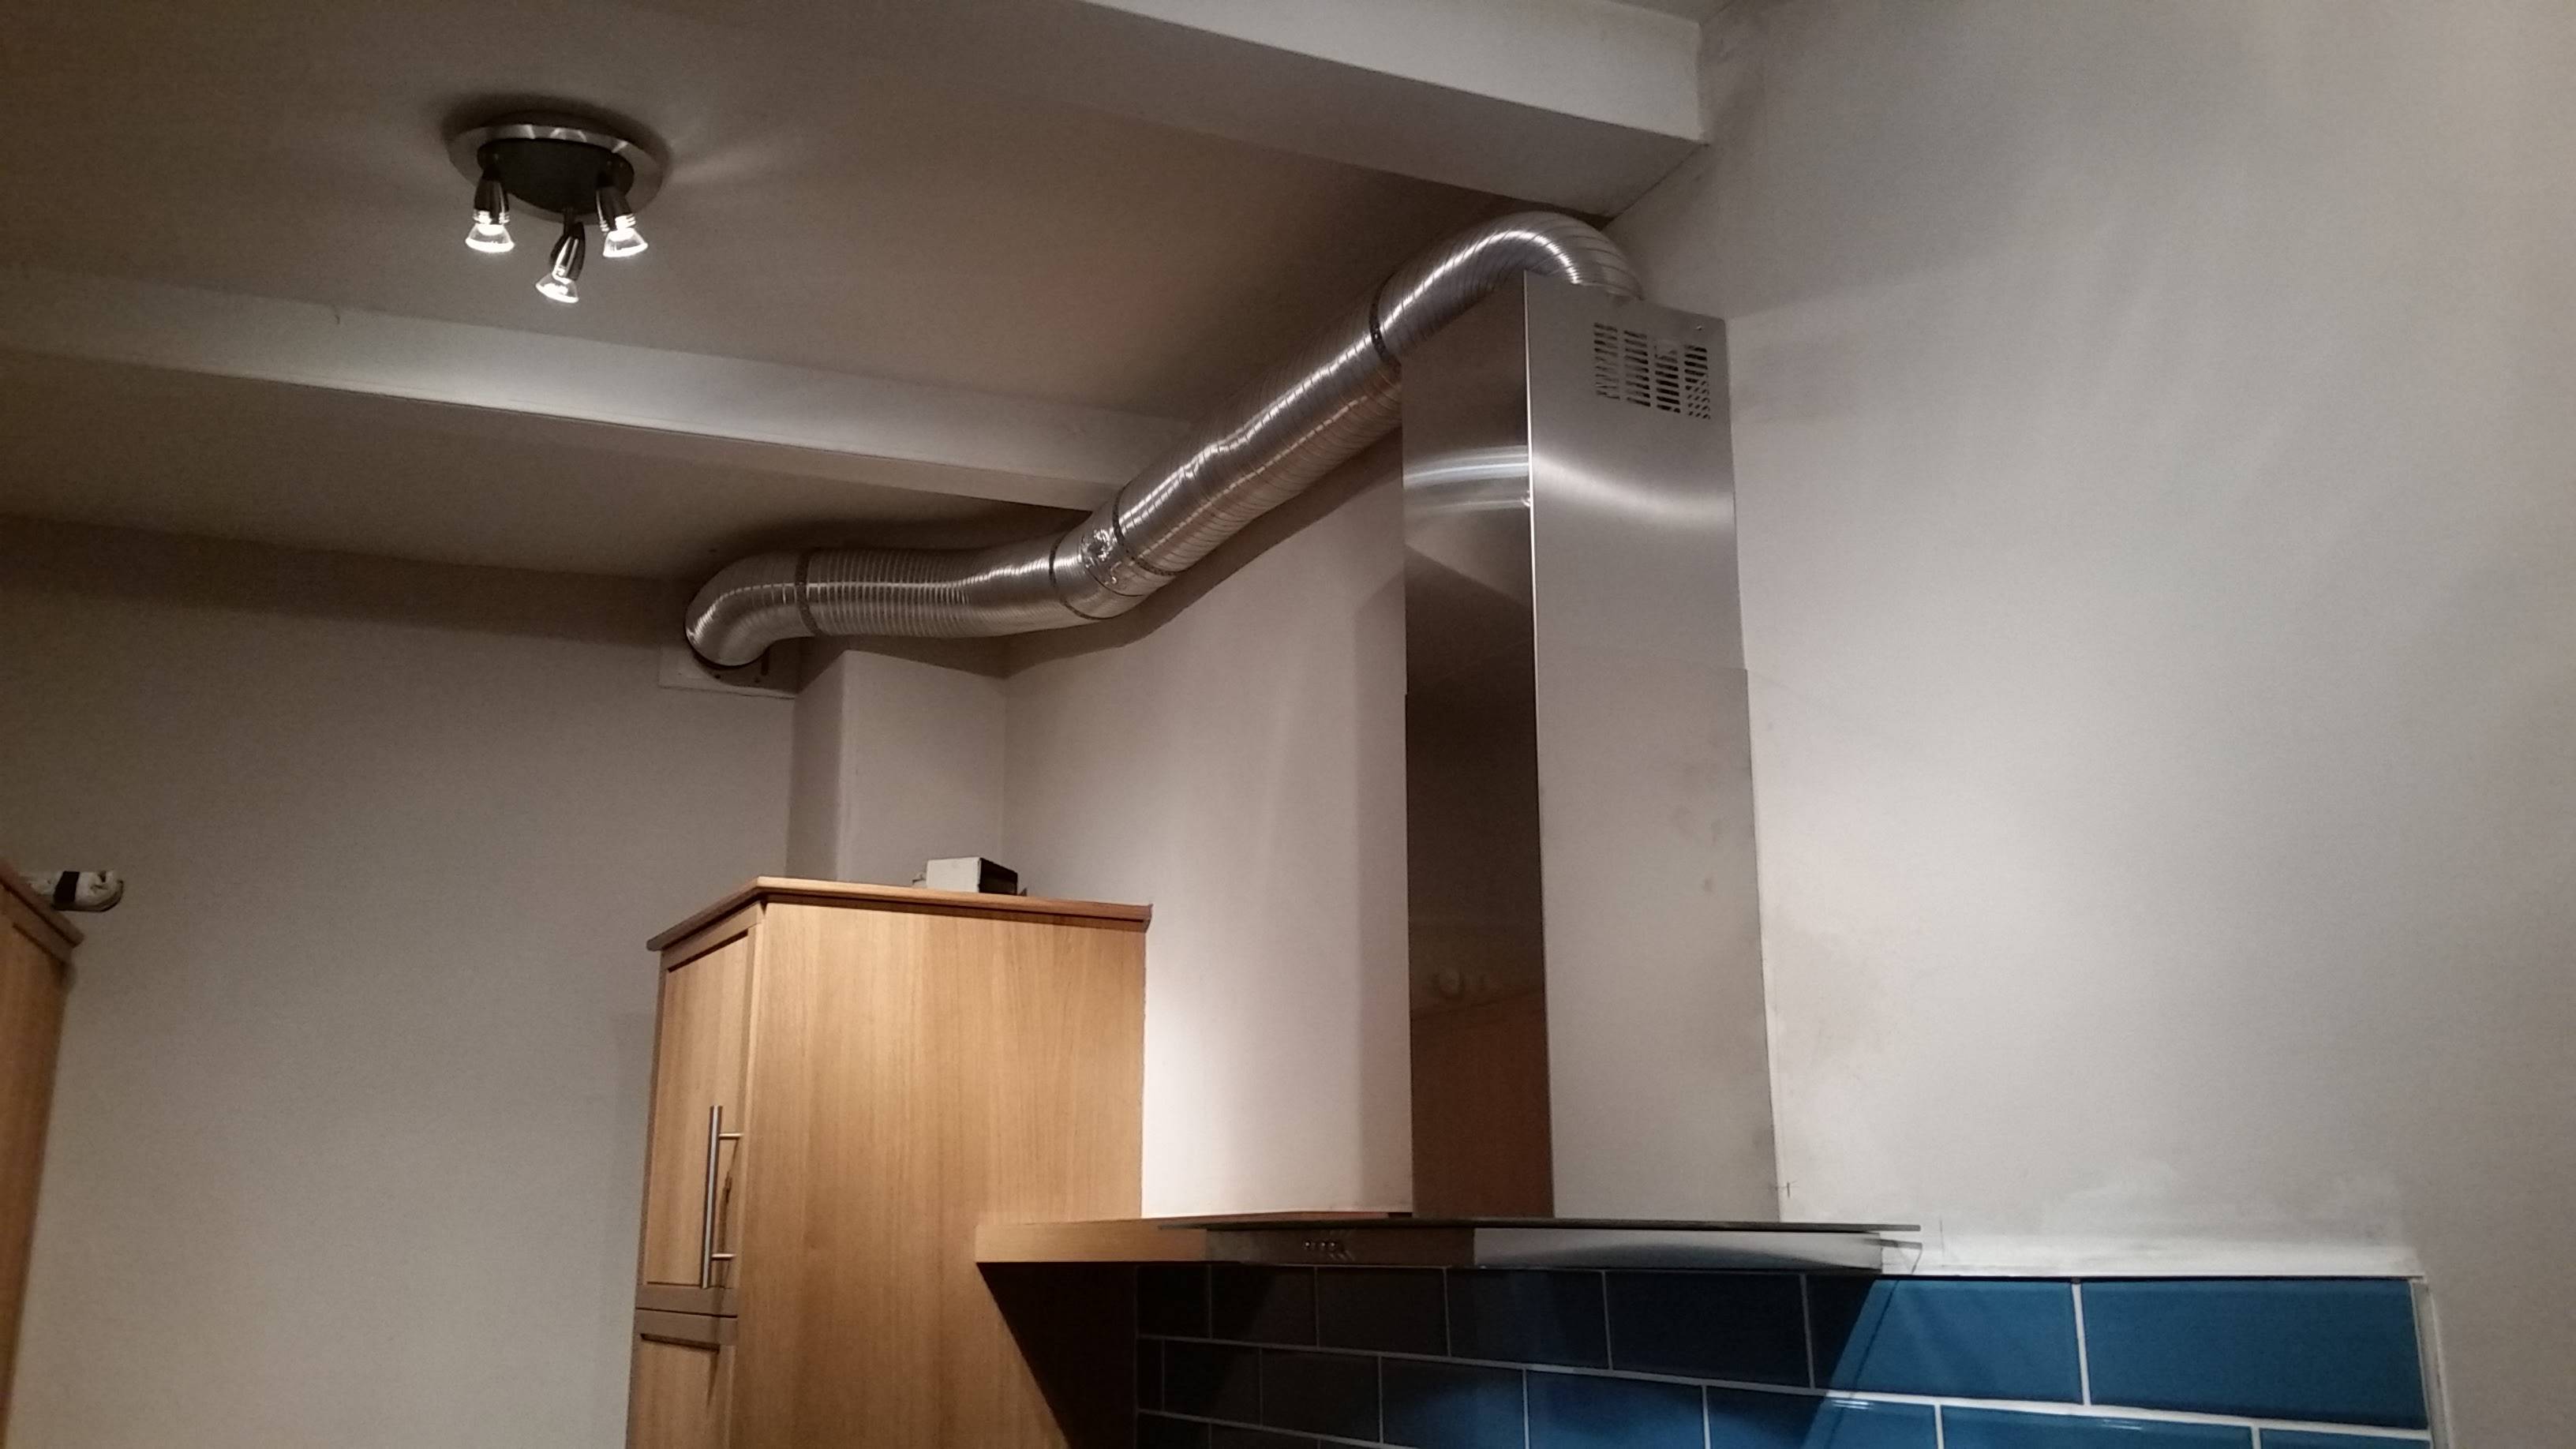 Вентиляция на кухне: как сделать вытяжку в квартире правильно и устройство, монтаж